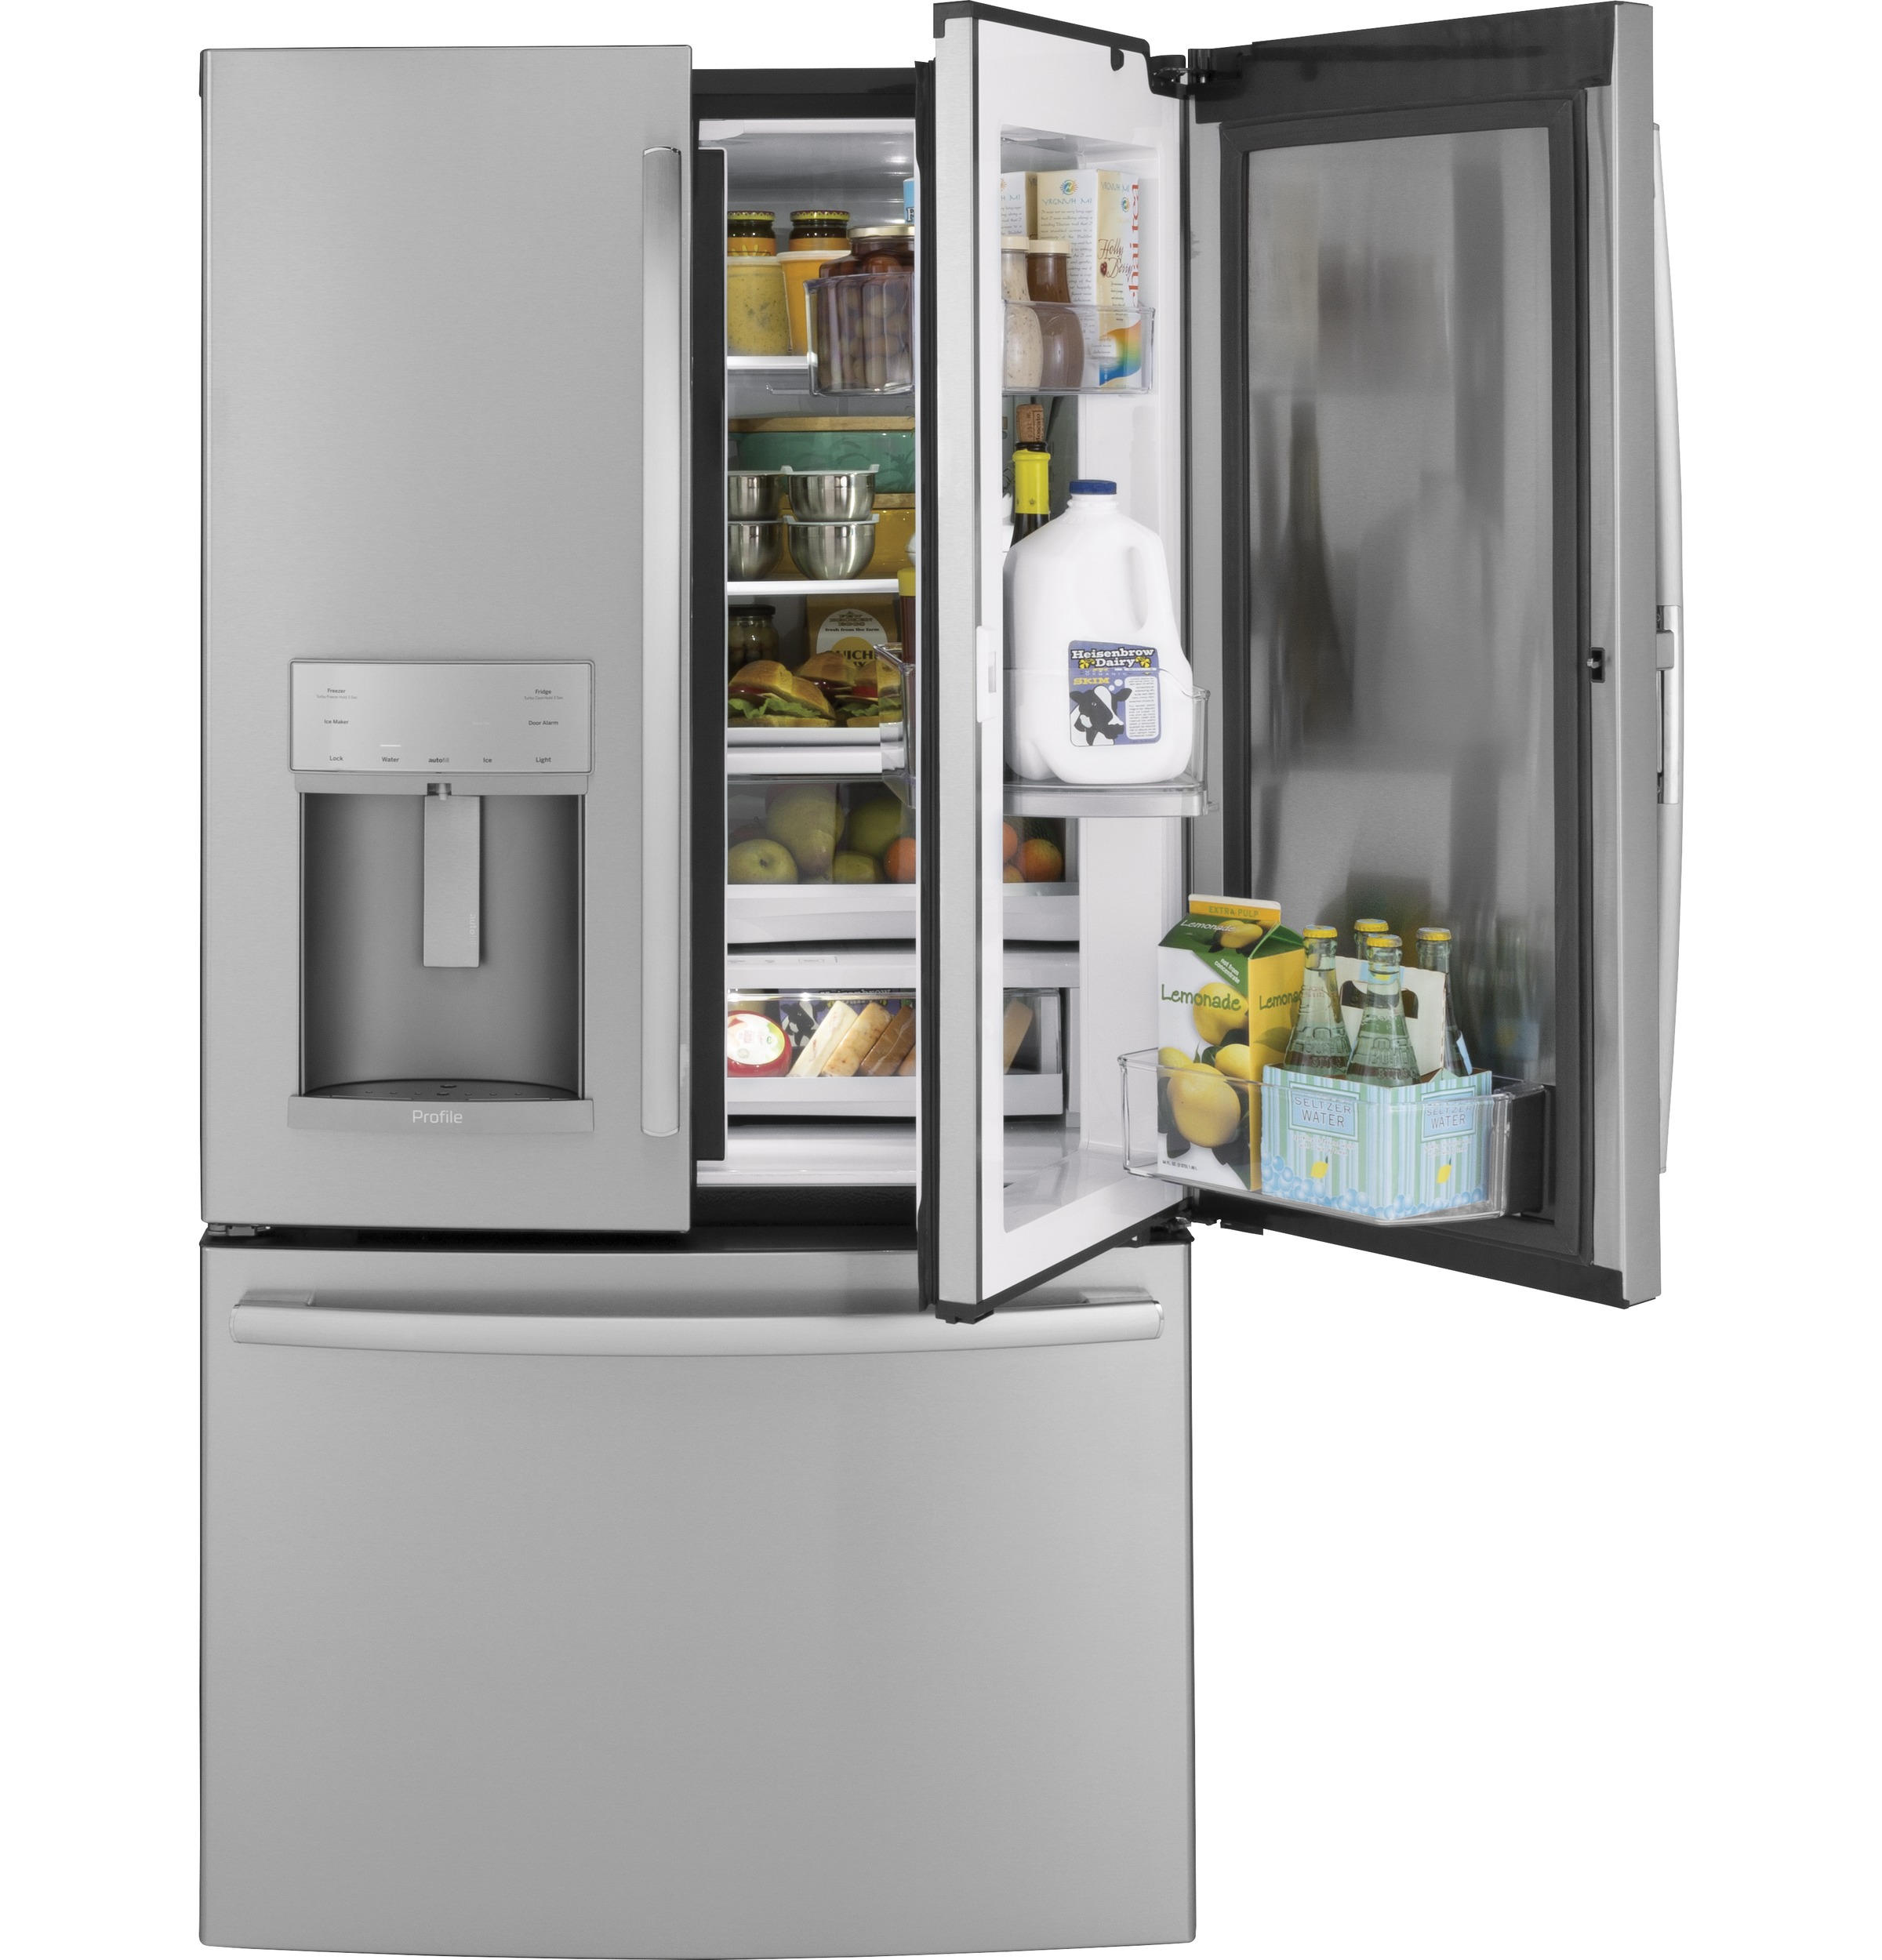 GE Profile™ Series 27.7 Cu. Ft. French-Door Refrigerator with Door In Door and Hands-Free AutoFill